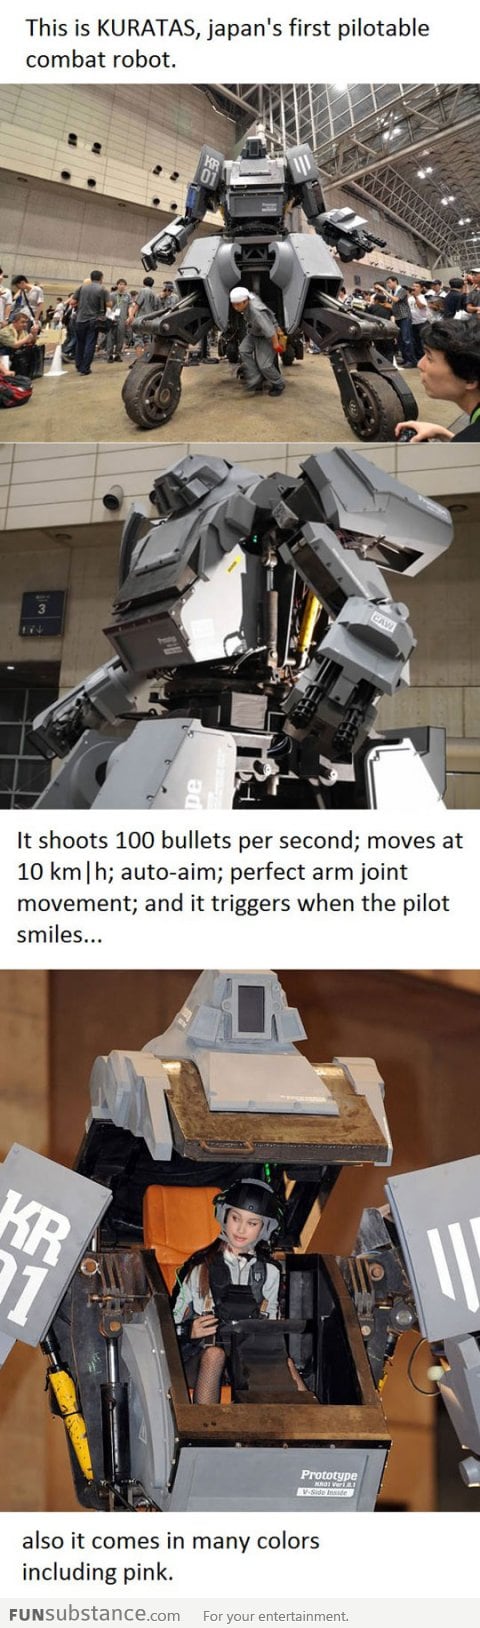 Japan's first combat robot